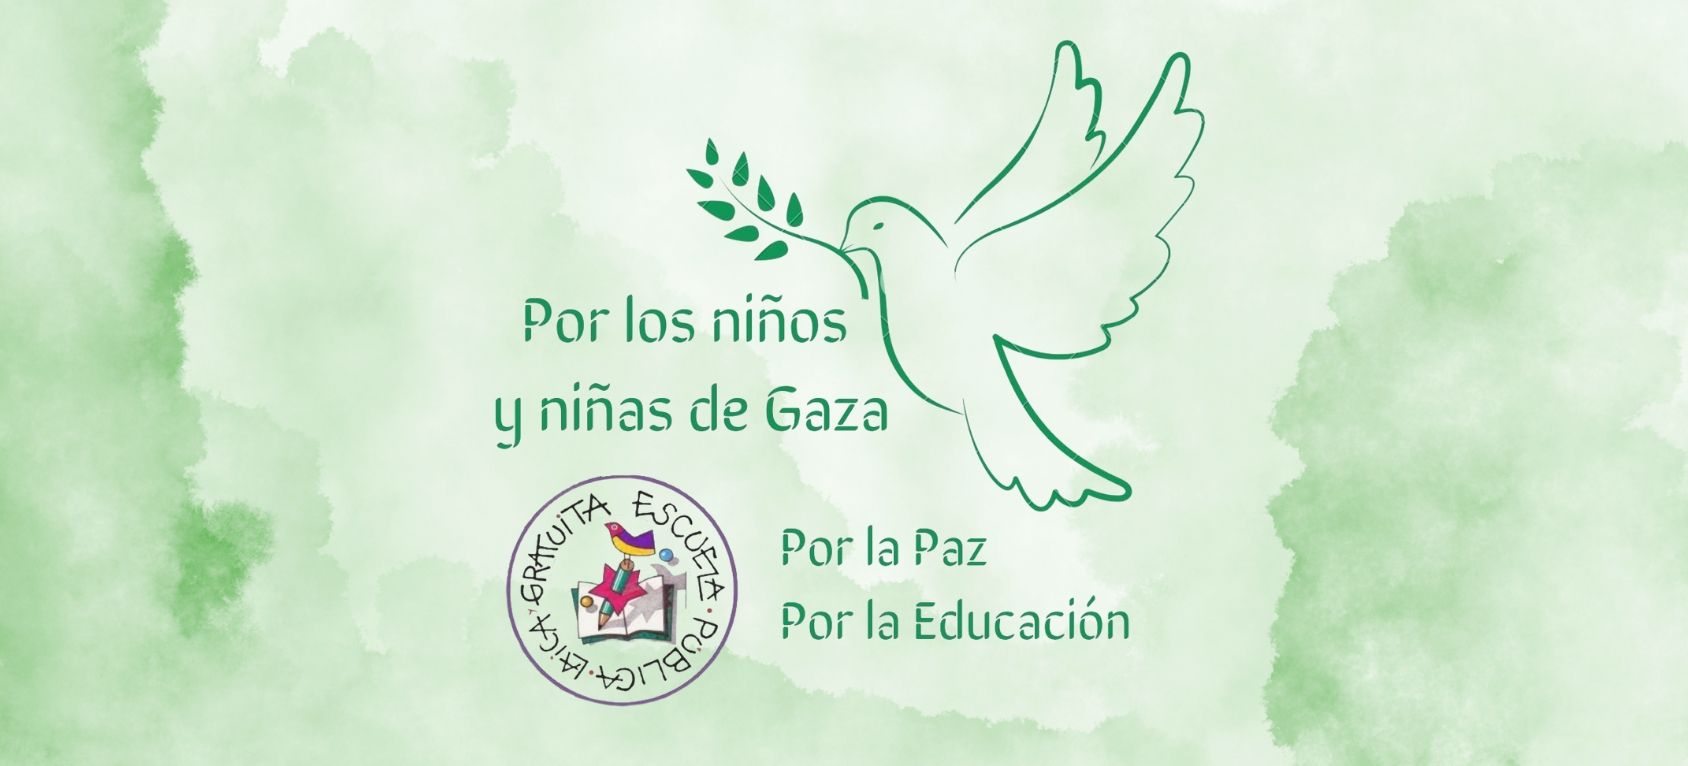 Por los niños de Gaza